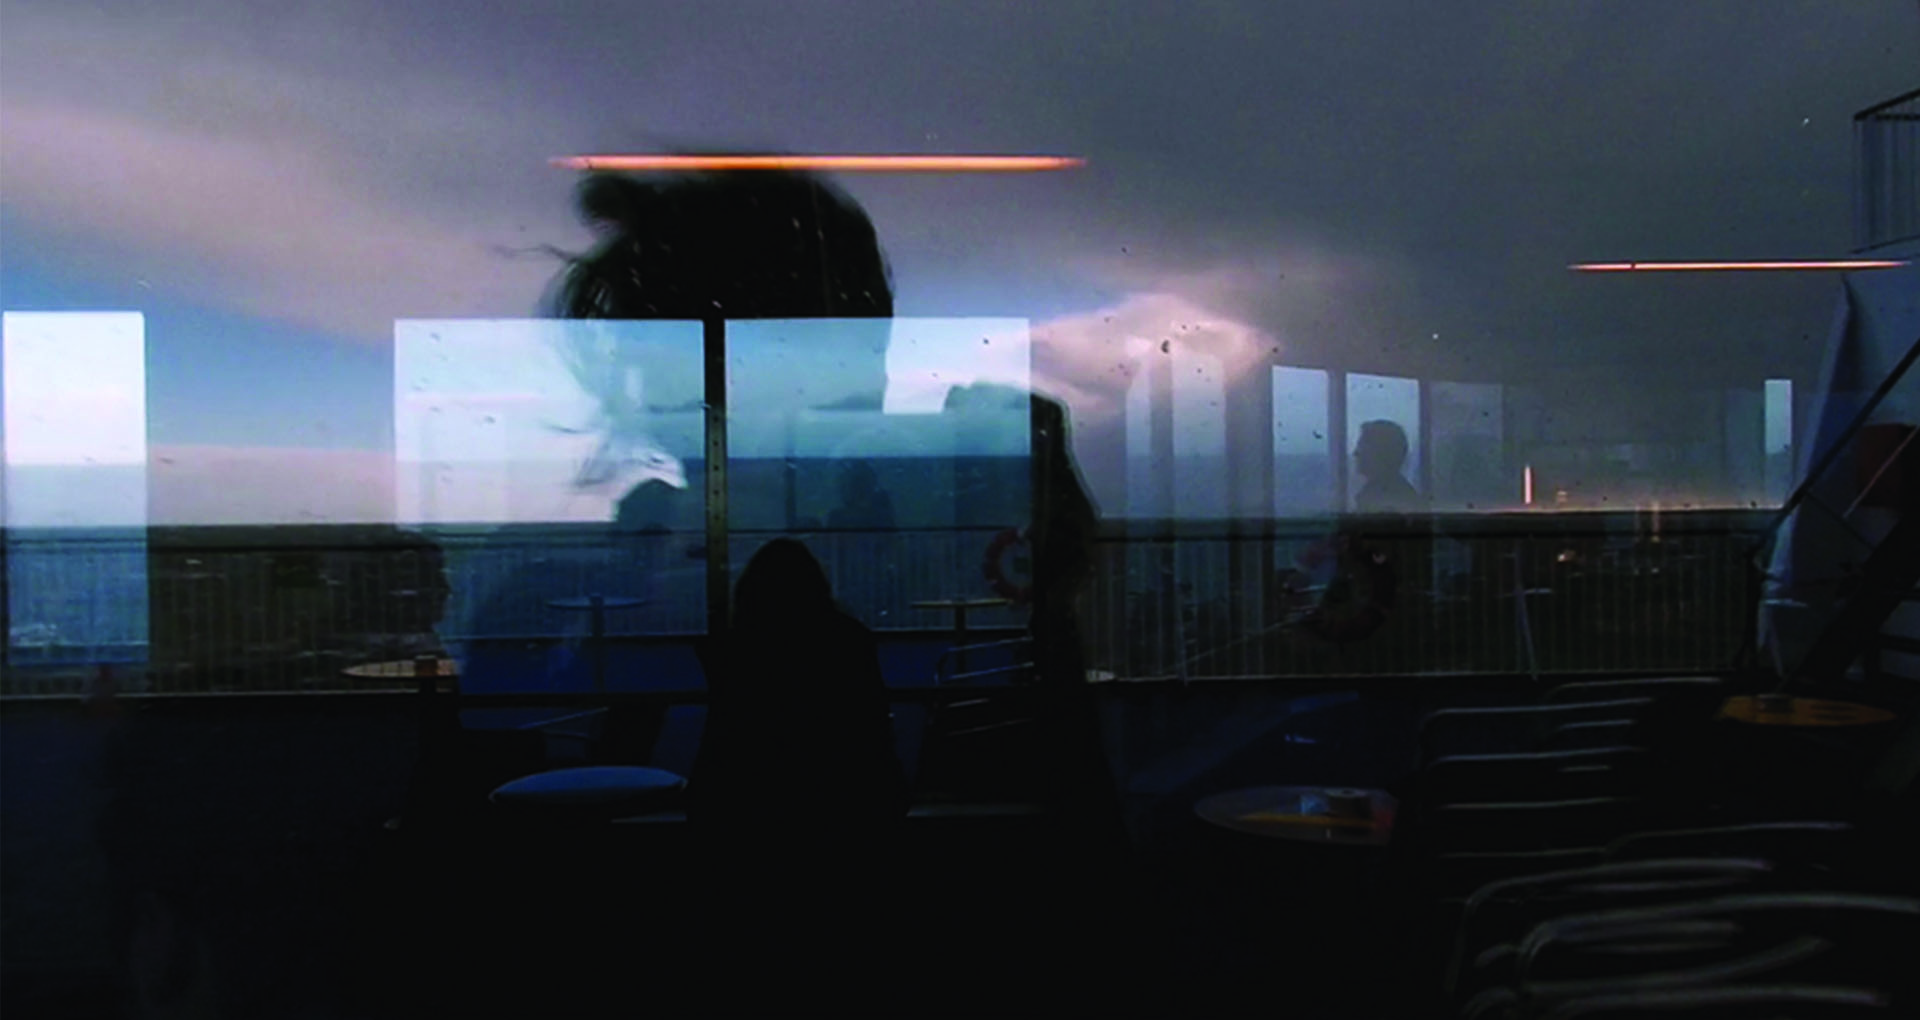 Texte alternatif : Photographie couleur. Reflet d’une femme en contre jour sur le pont d’un bateau.